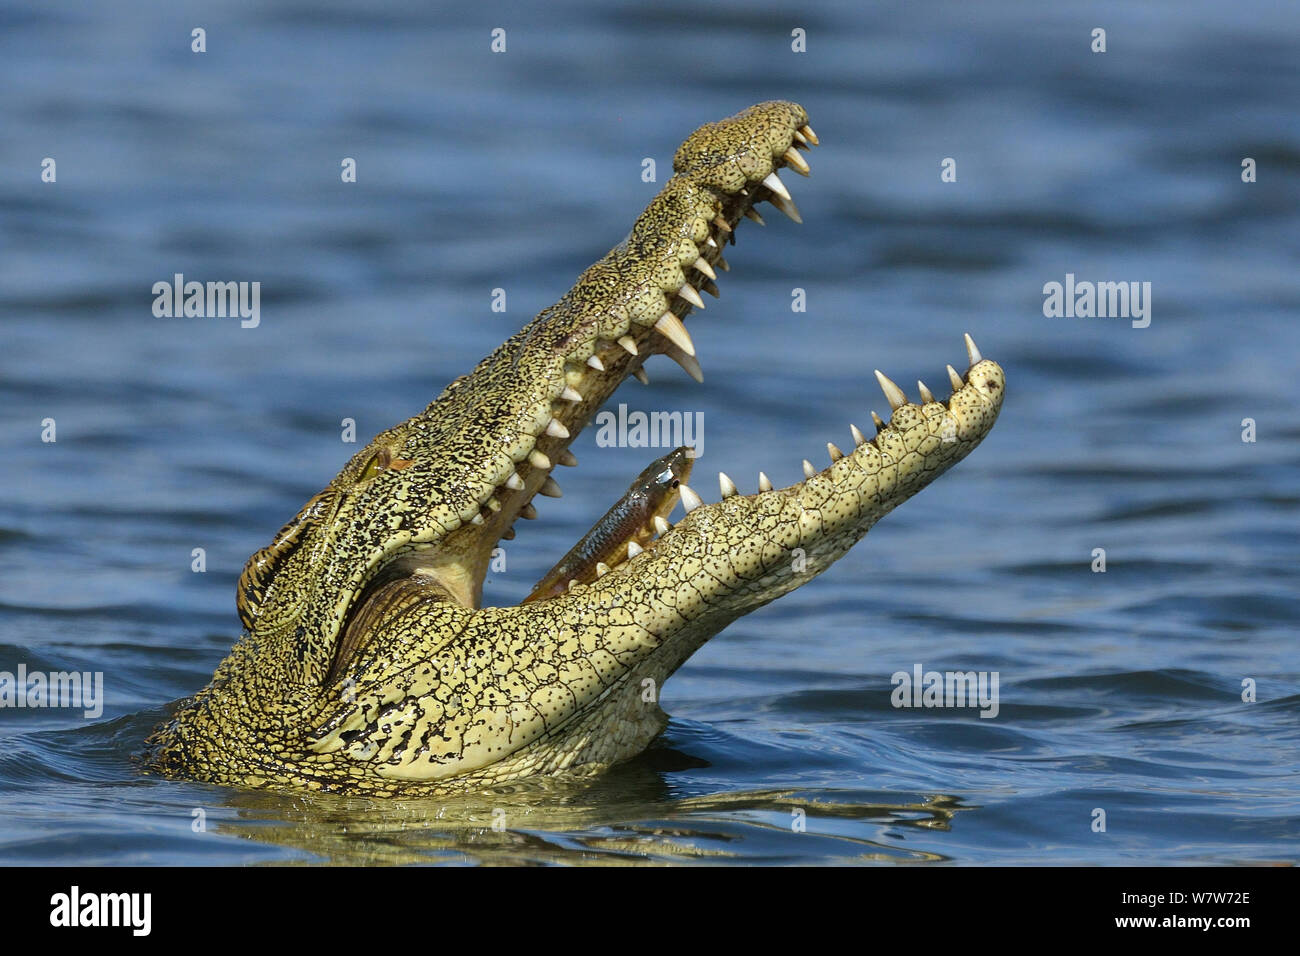 Le crocodile du Nil (Crocodylus niloticus) avaler leur proie, rivière Chobe, au Botswana, en novembre. Banque D'Images